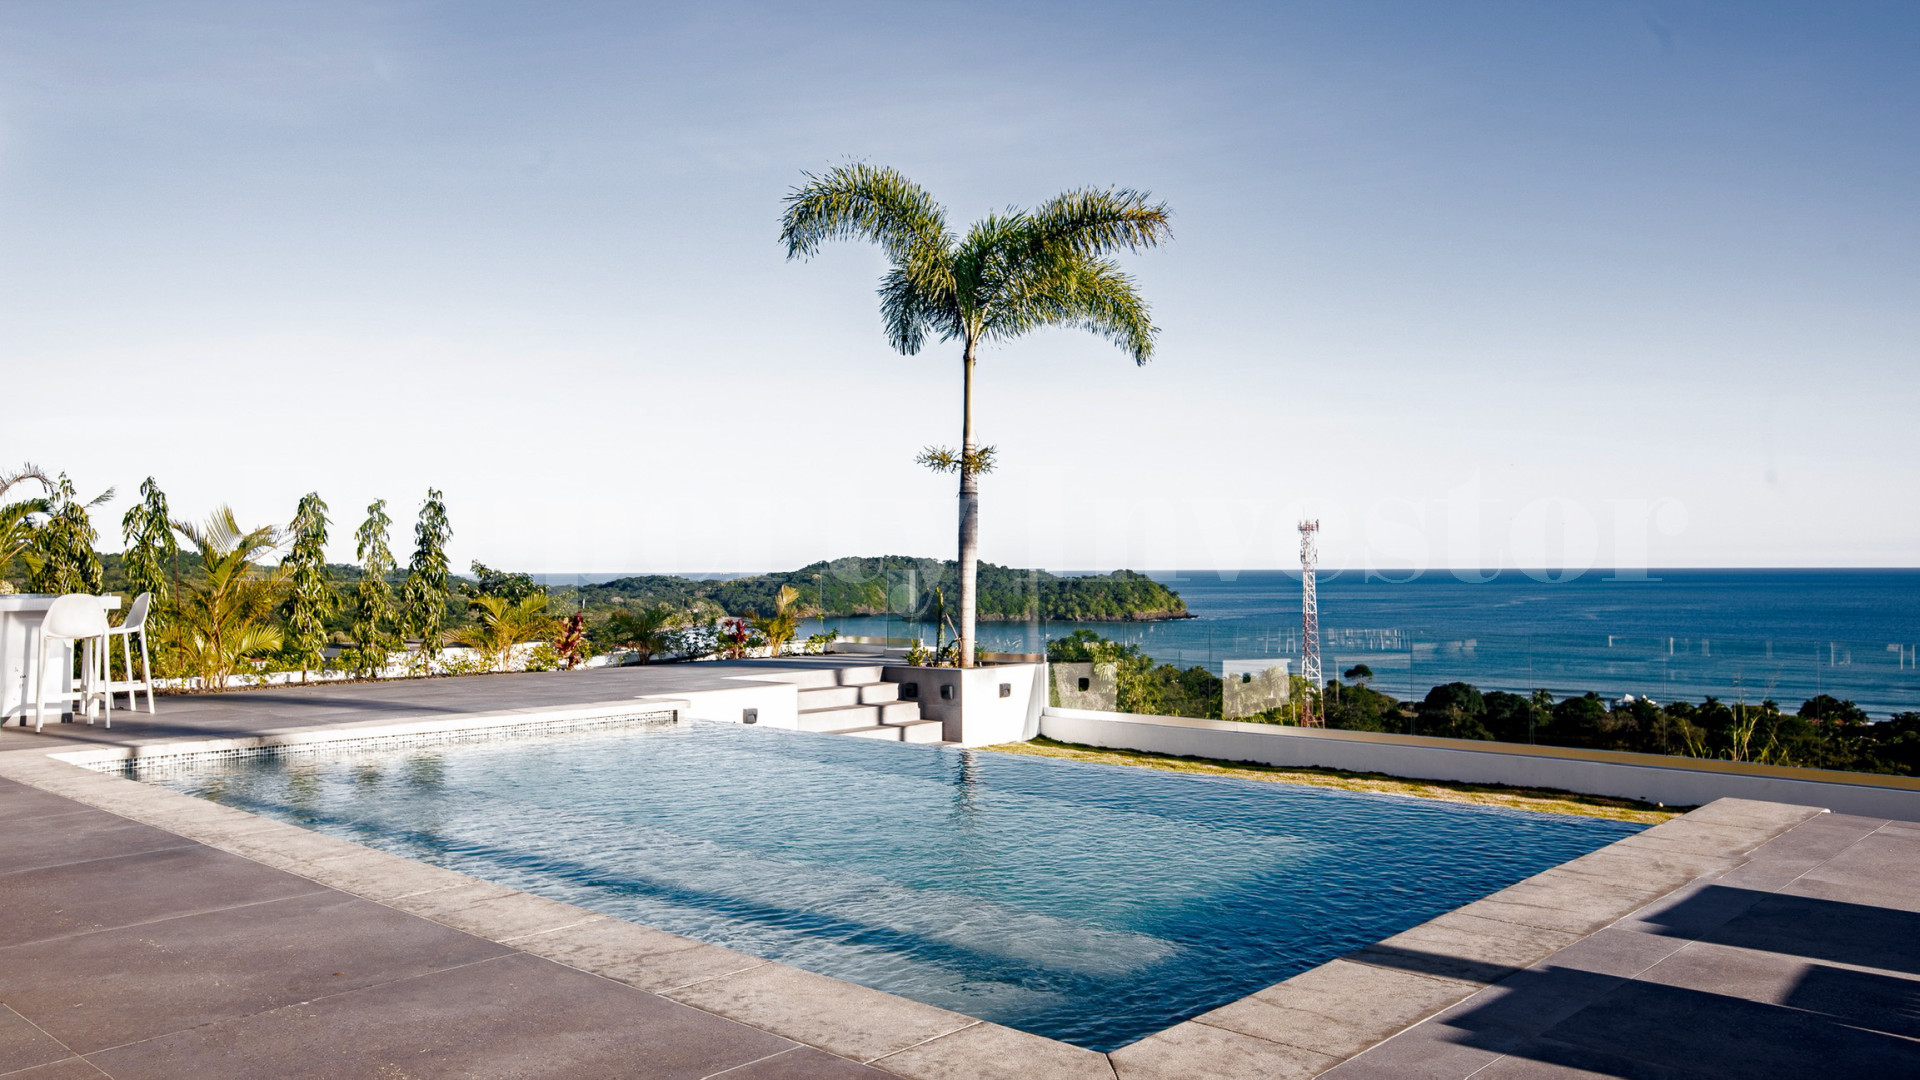 Продаётся невероятная, ультра современная, роскошная вилла на 4 спальни с видом на океан в Плайя Венао, Панама